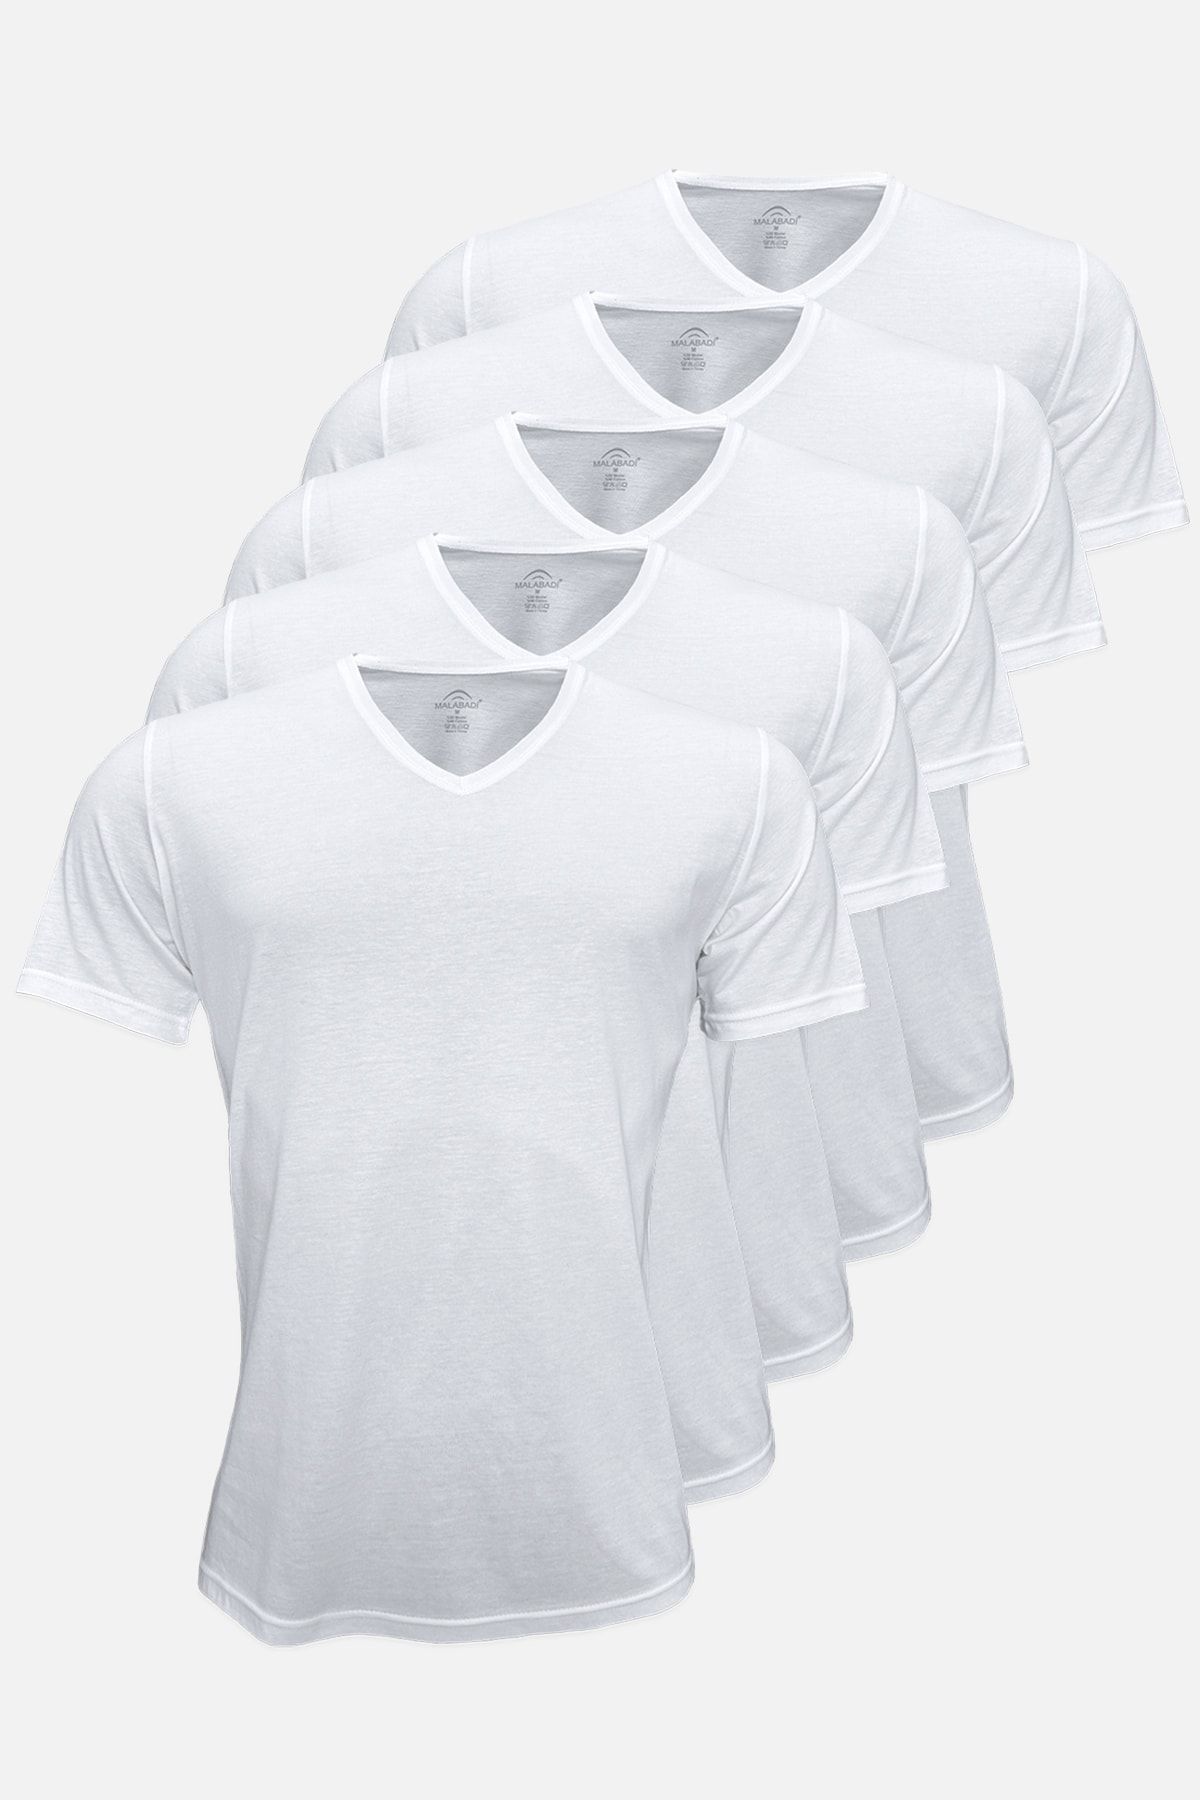 Malabadi Yaz Serinliği Erkek Beyaz Basic V Yaka Ince Modal Kumaş 5 Li Tişört Paketi 5m085